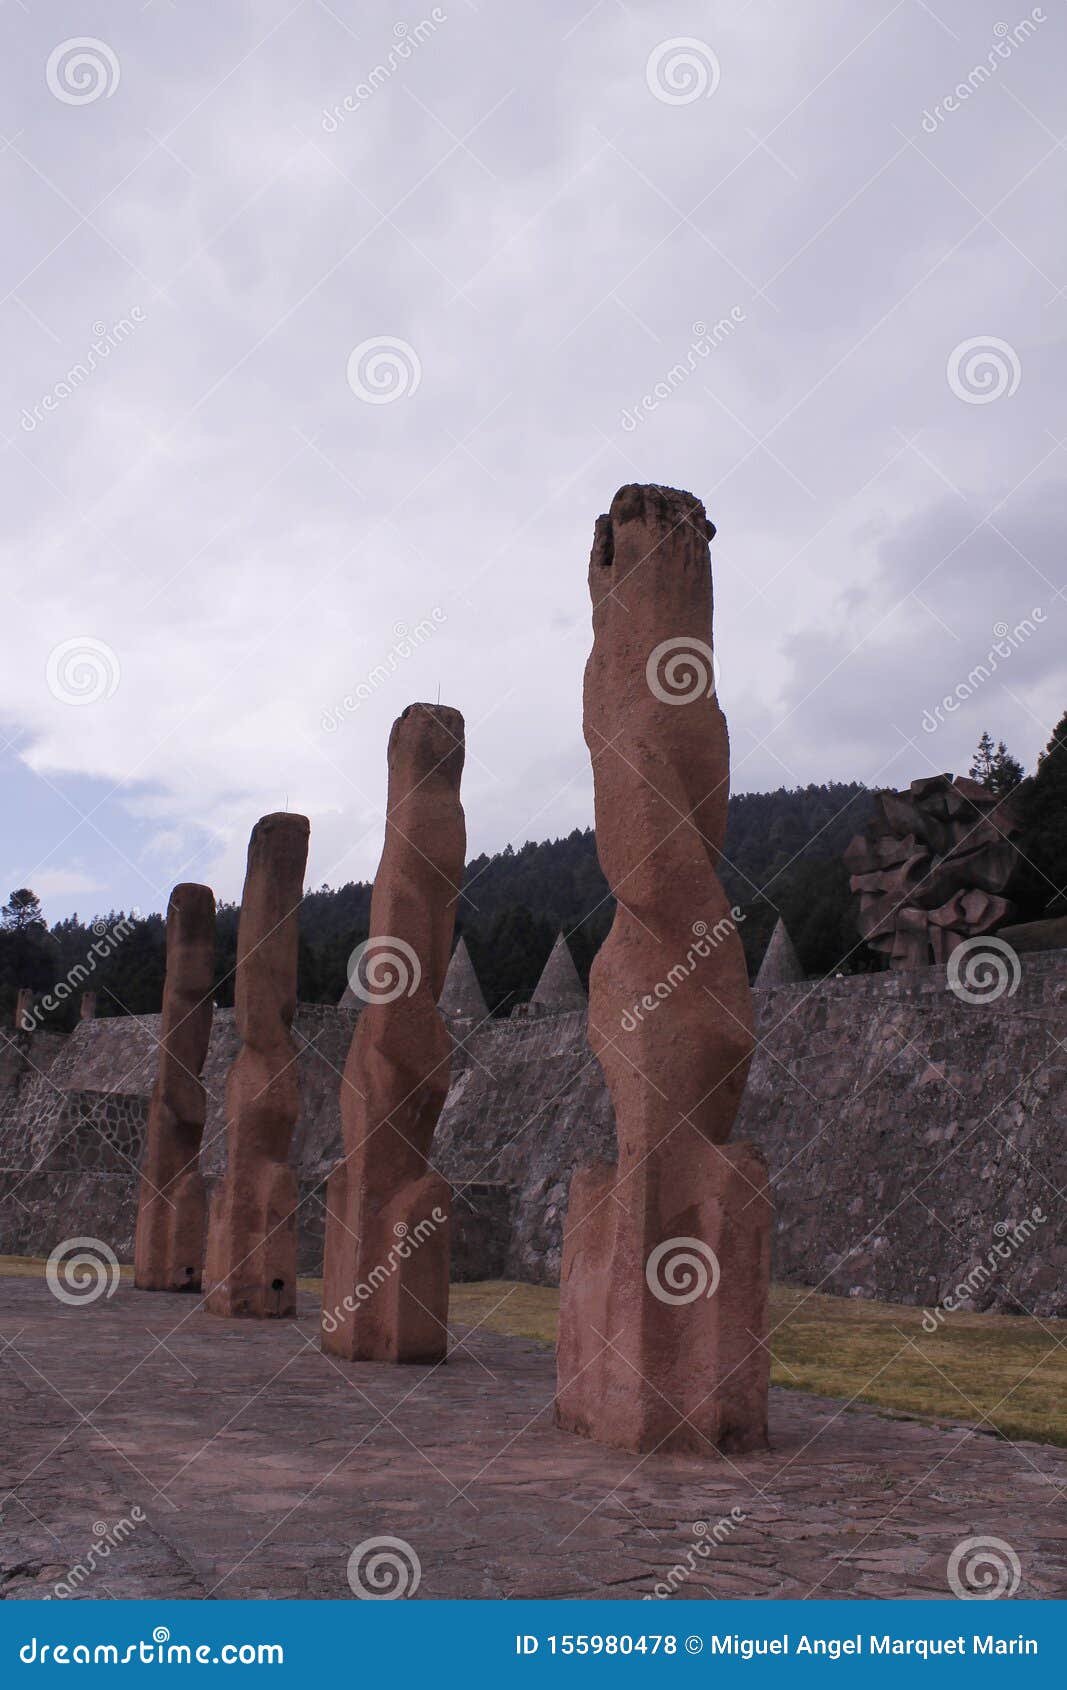 four sculptures in centro ceremonial otomi, estado de mexico